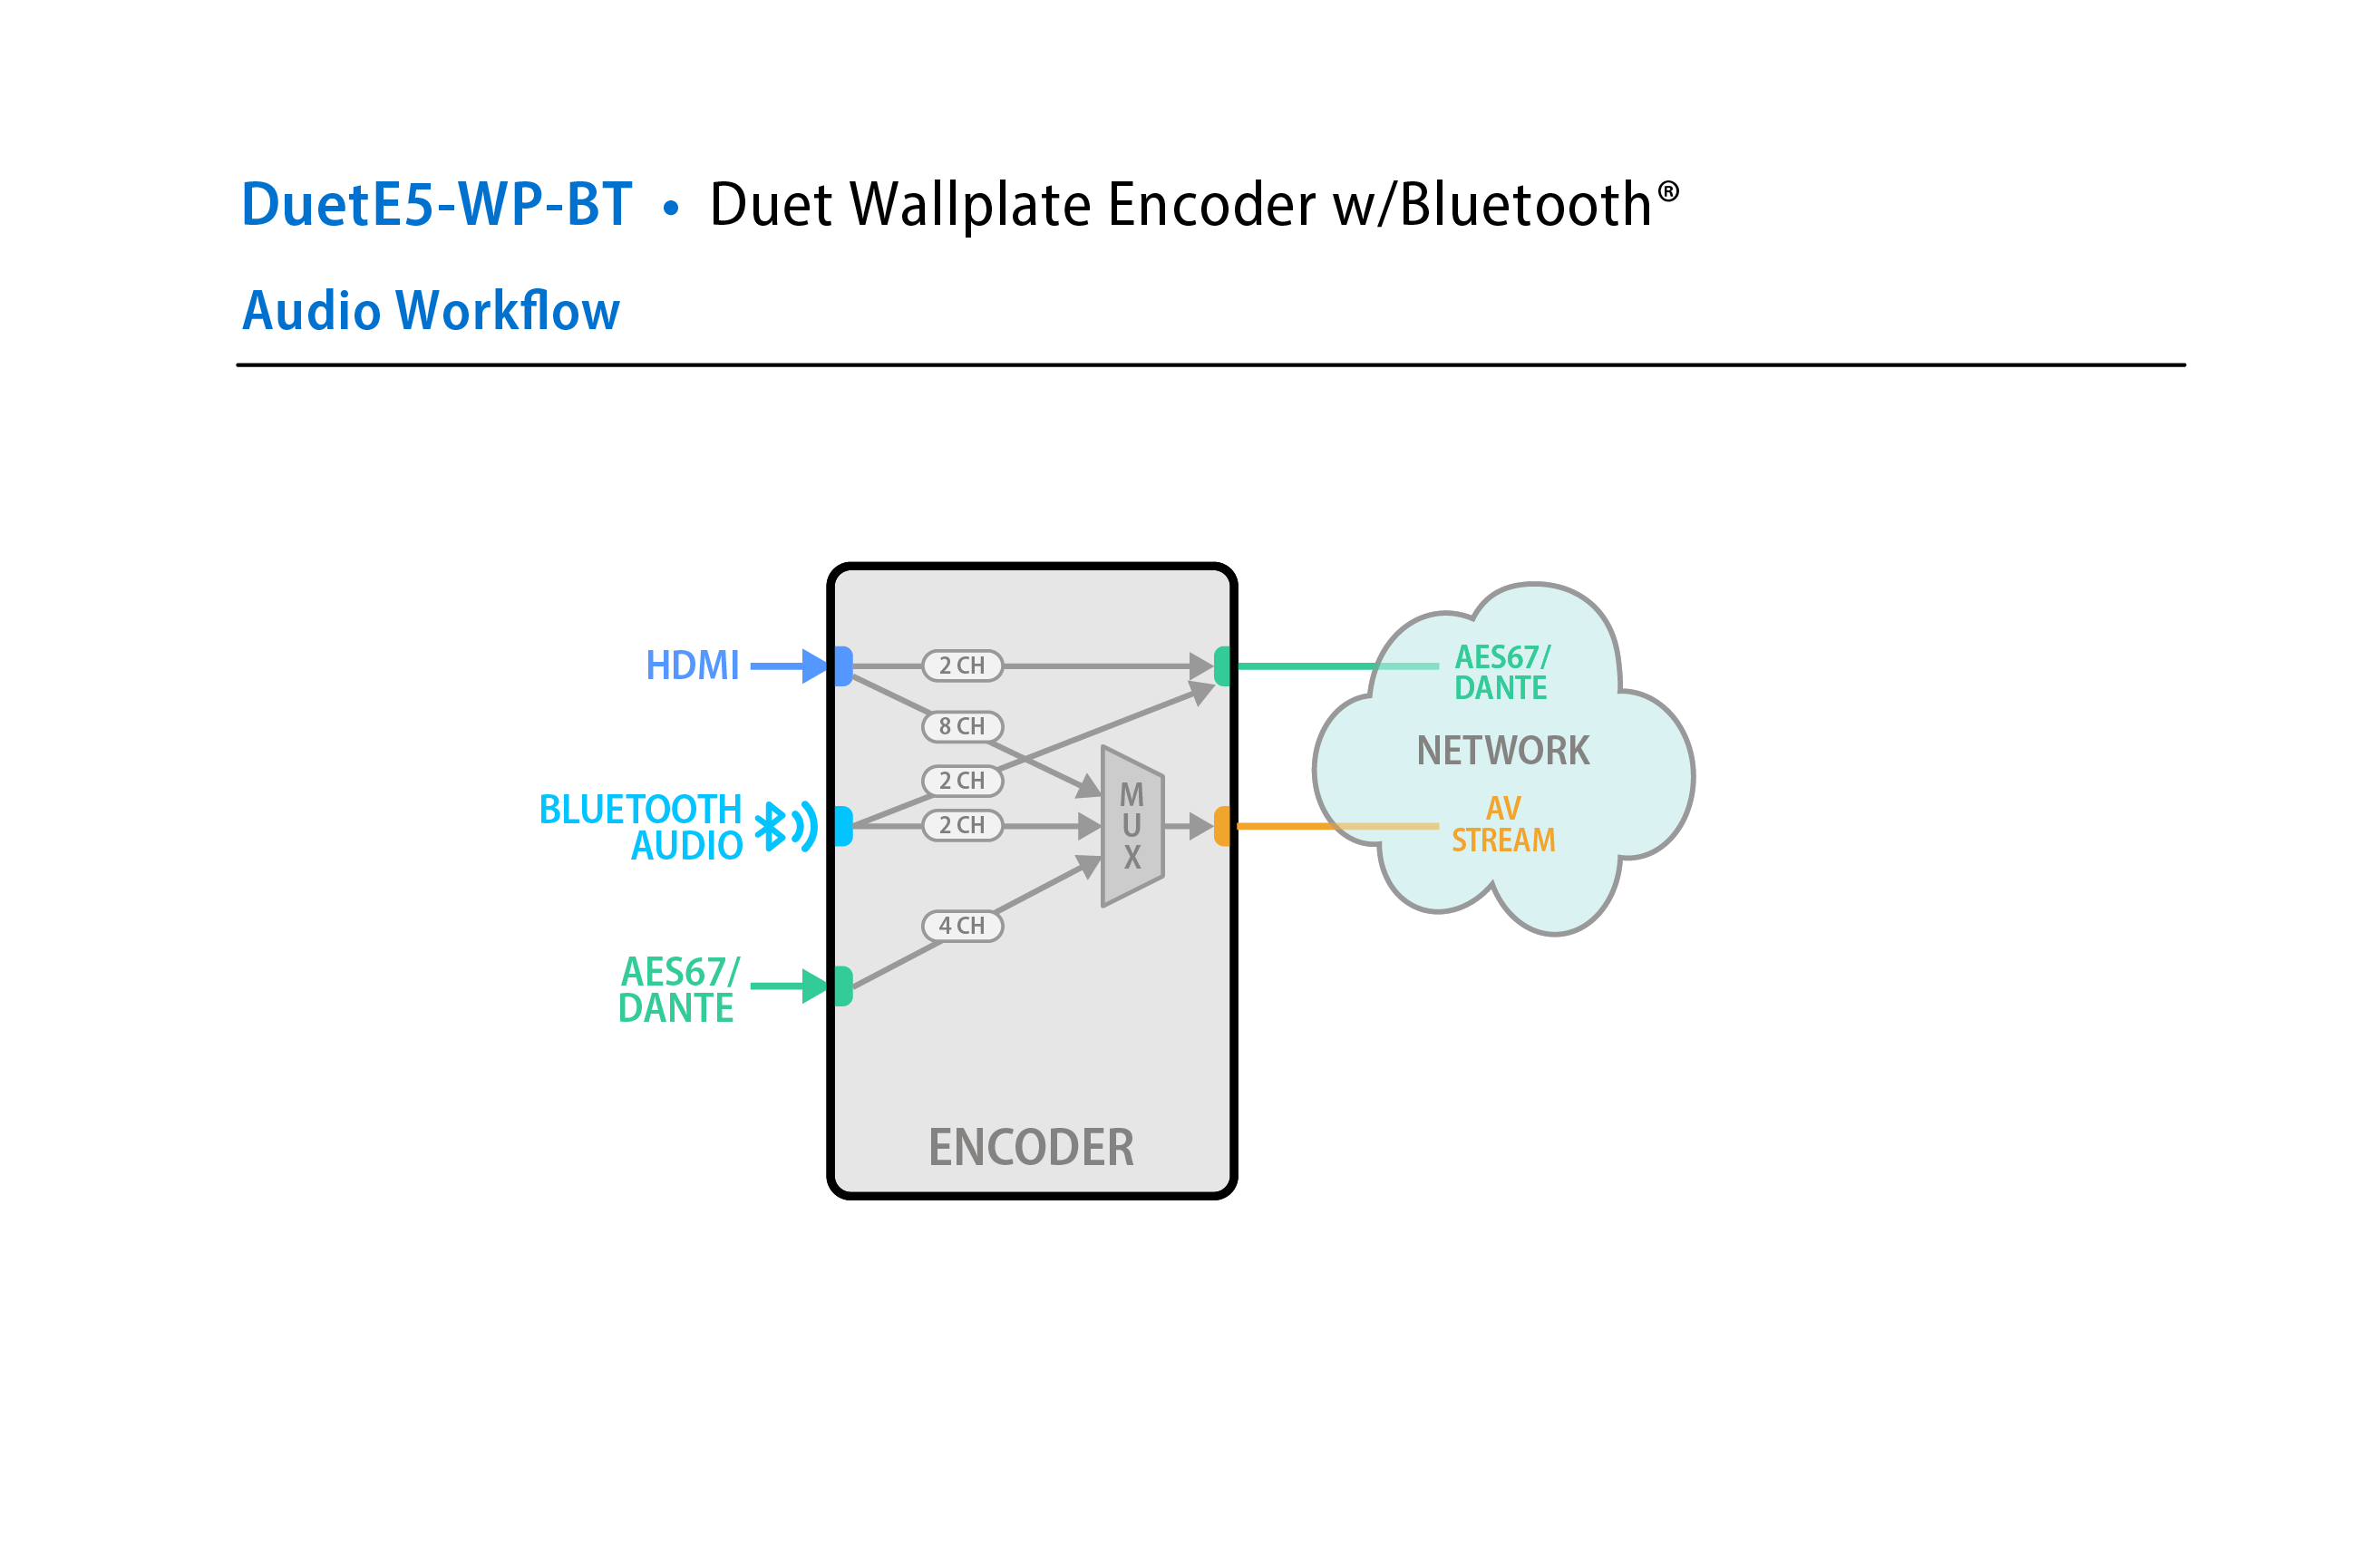 DuetE5-WP-BT Workflow